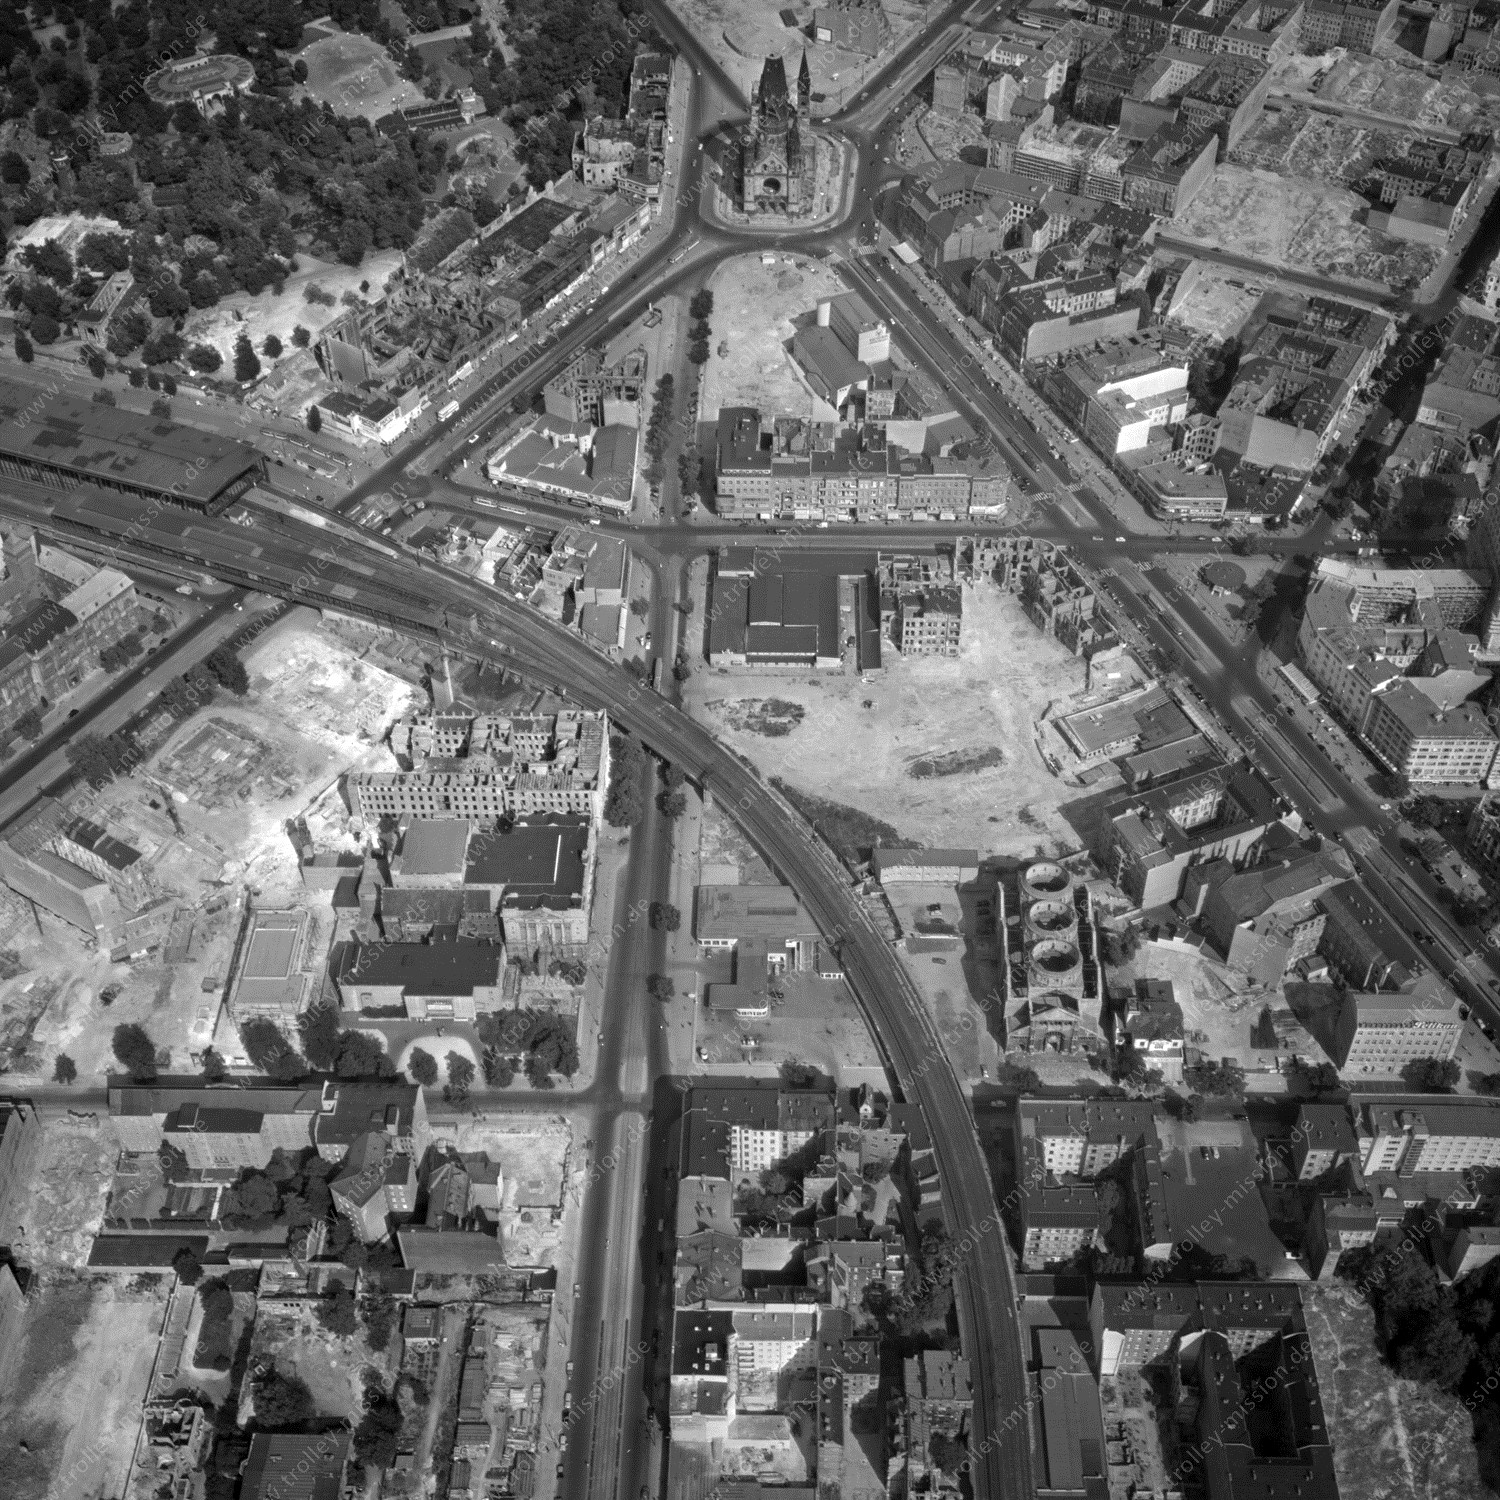 Alte Fotos und Luftbilder von Berlin - Luftbildaufnahme Nr. 01 - Historische Luftaufnahmen von West-Berlin aus dem Jahr 1954 - Flugstrecke Uniform